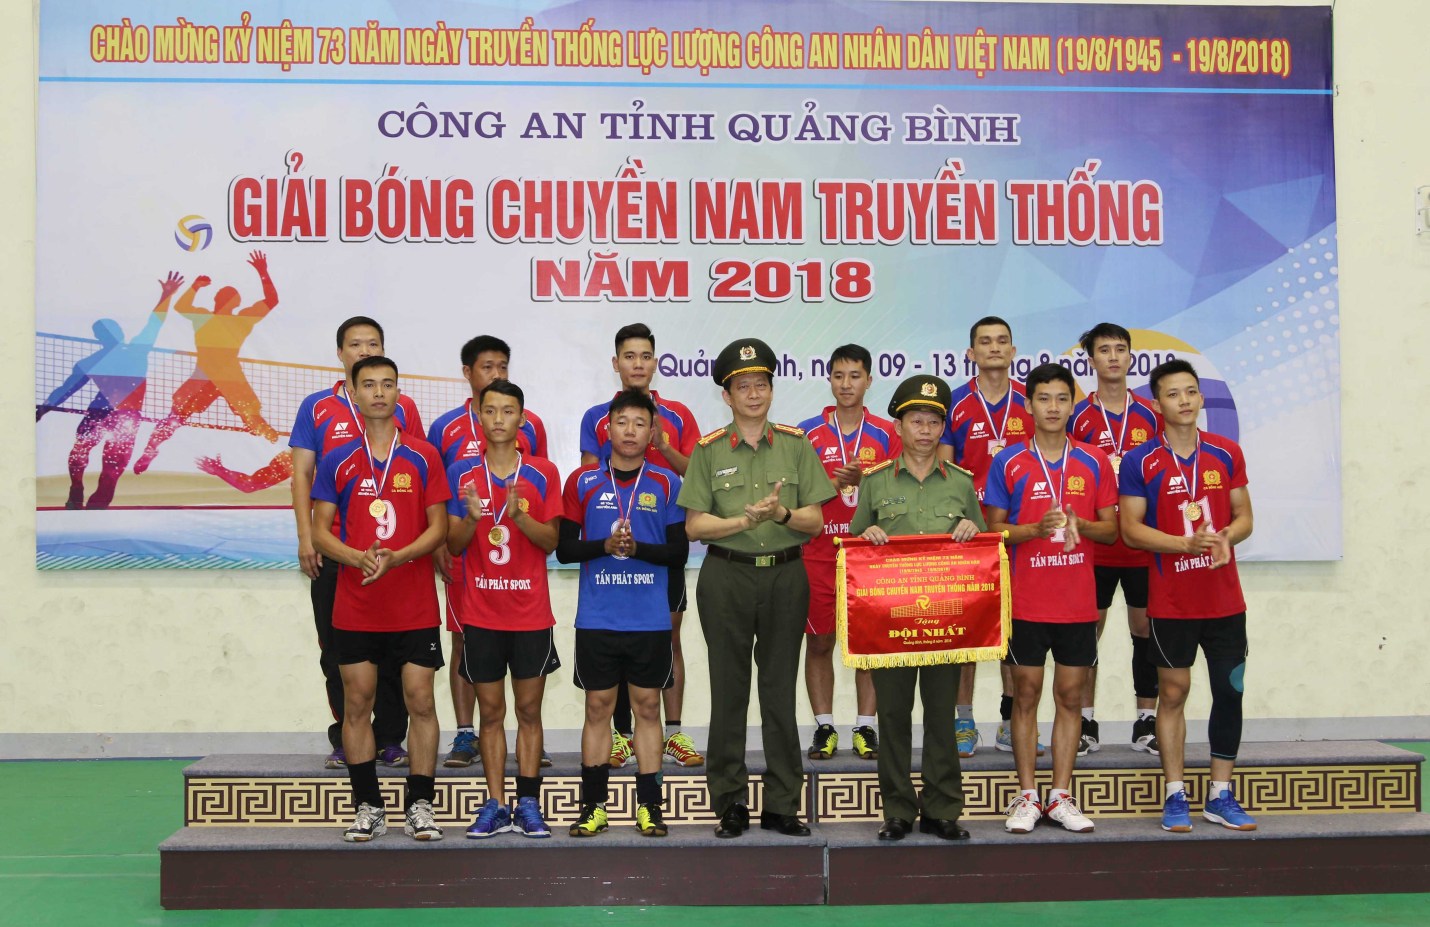 Lãnh đạo Công an tỉnh trao giải nhất cho đội bóng chuyền nam Công an thành phố Đồng Hới.